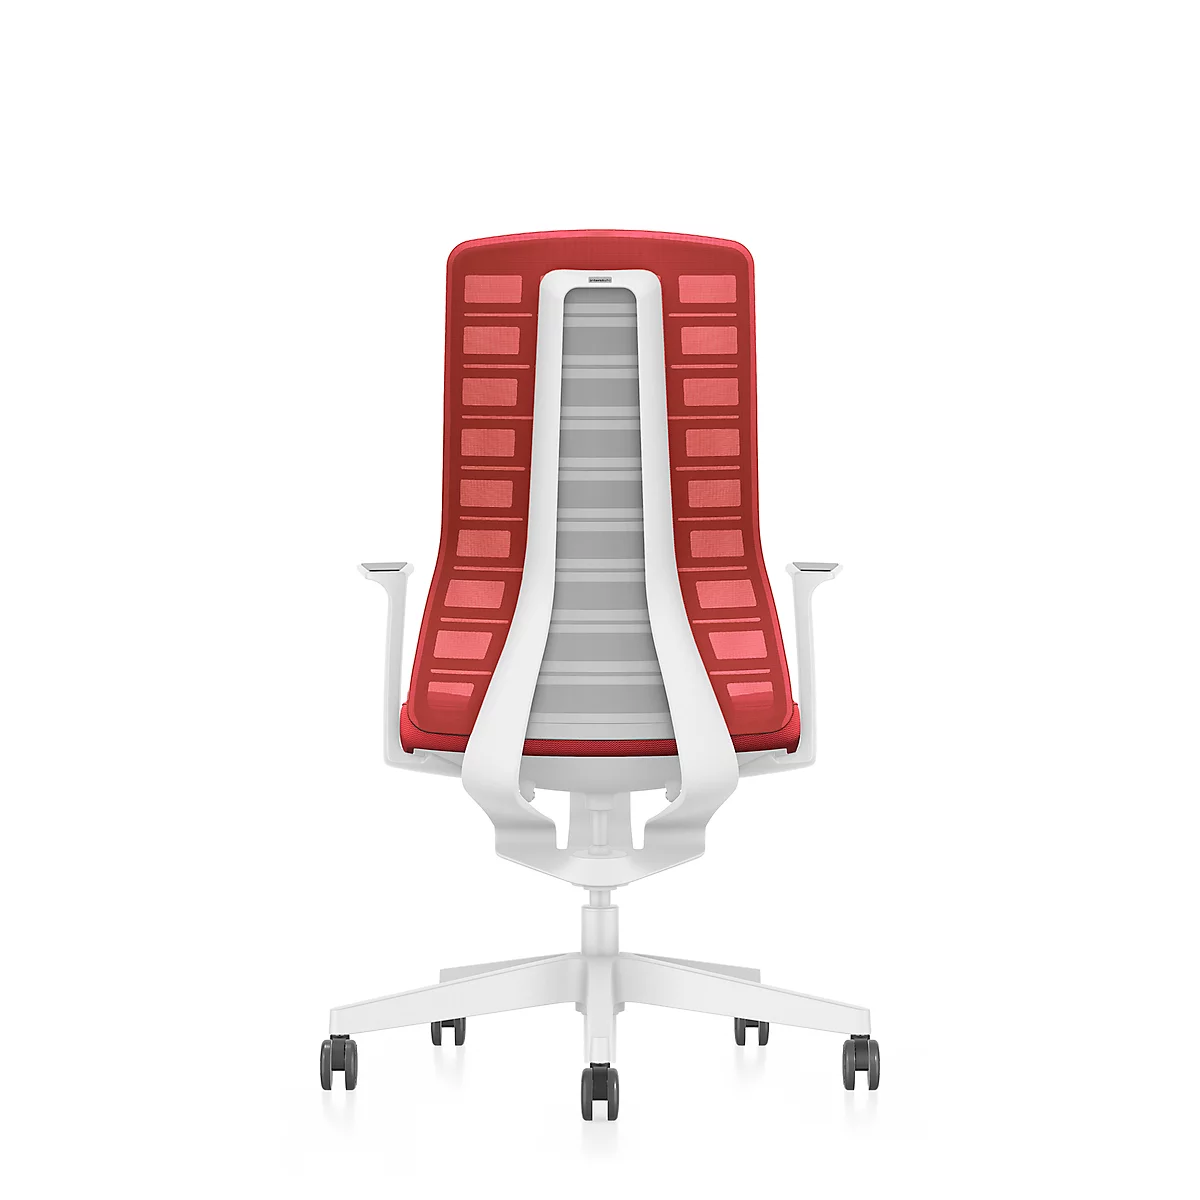 Interstuhl Bürostuhl PUREis3, feste Armlehnen, 3D-Auto-Synchronmechanik, Muldensitz, Netzrücken, feuerrot/weiß